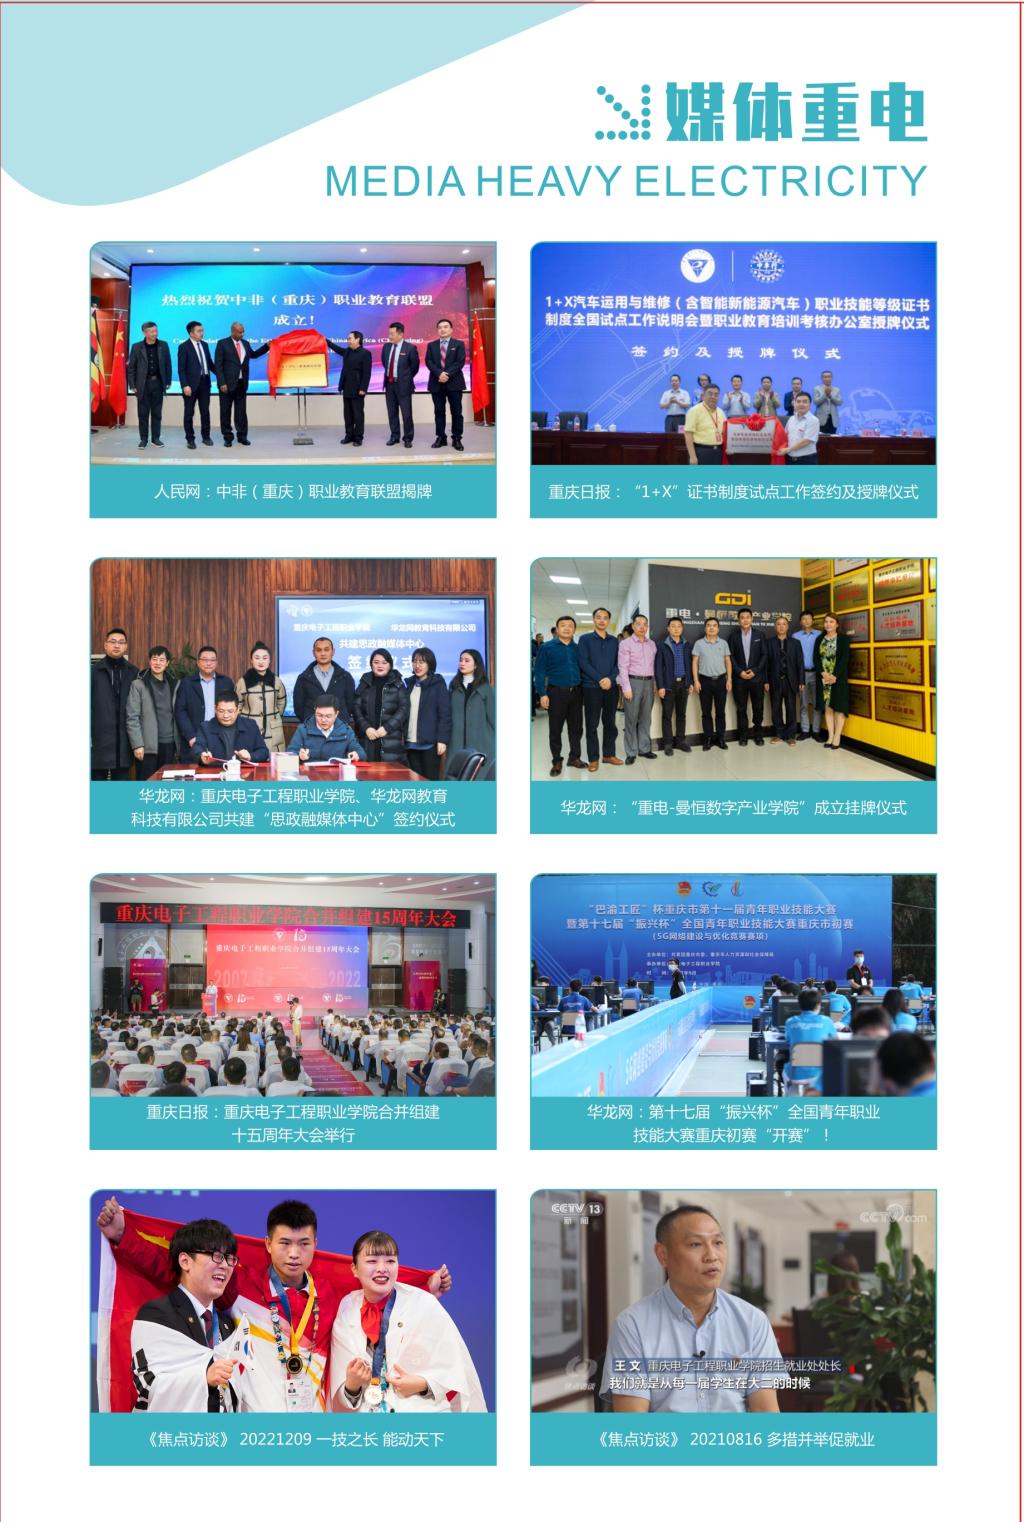 2023年重庆电子工程职业学院高职分类考试招生简章